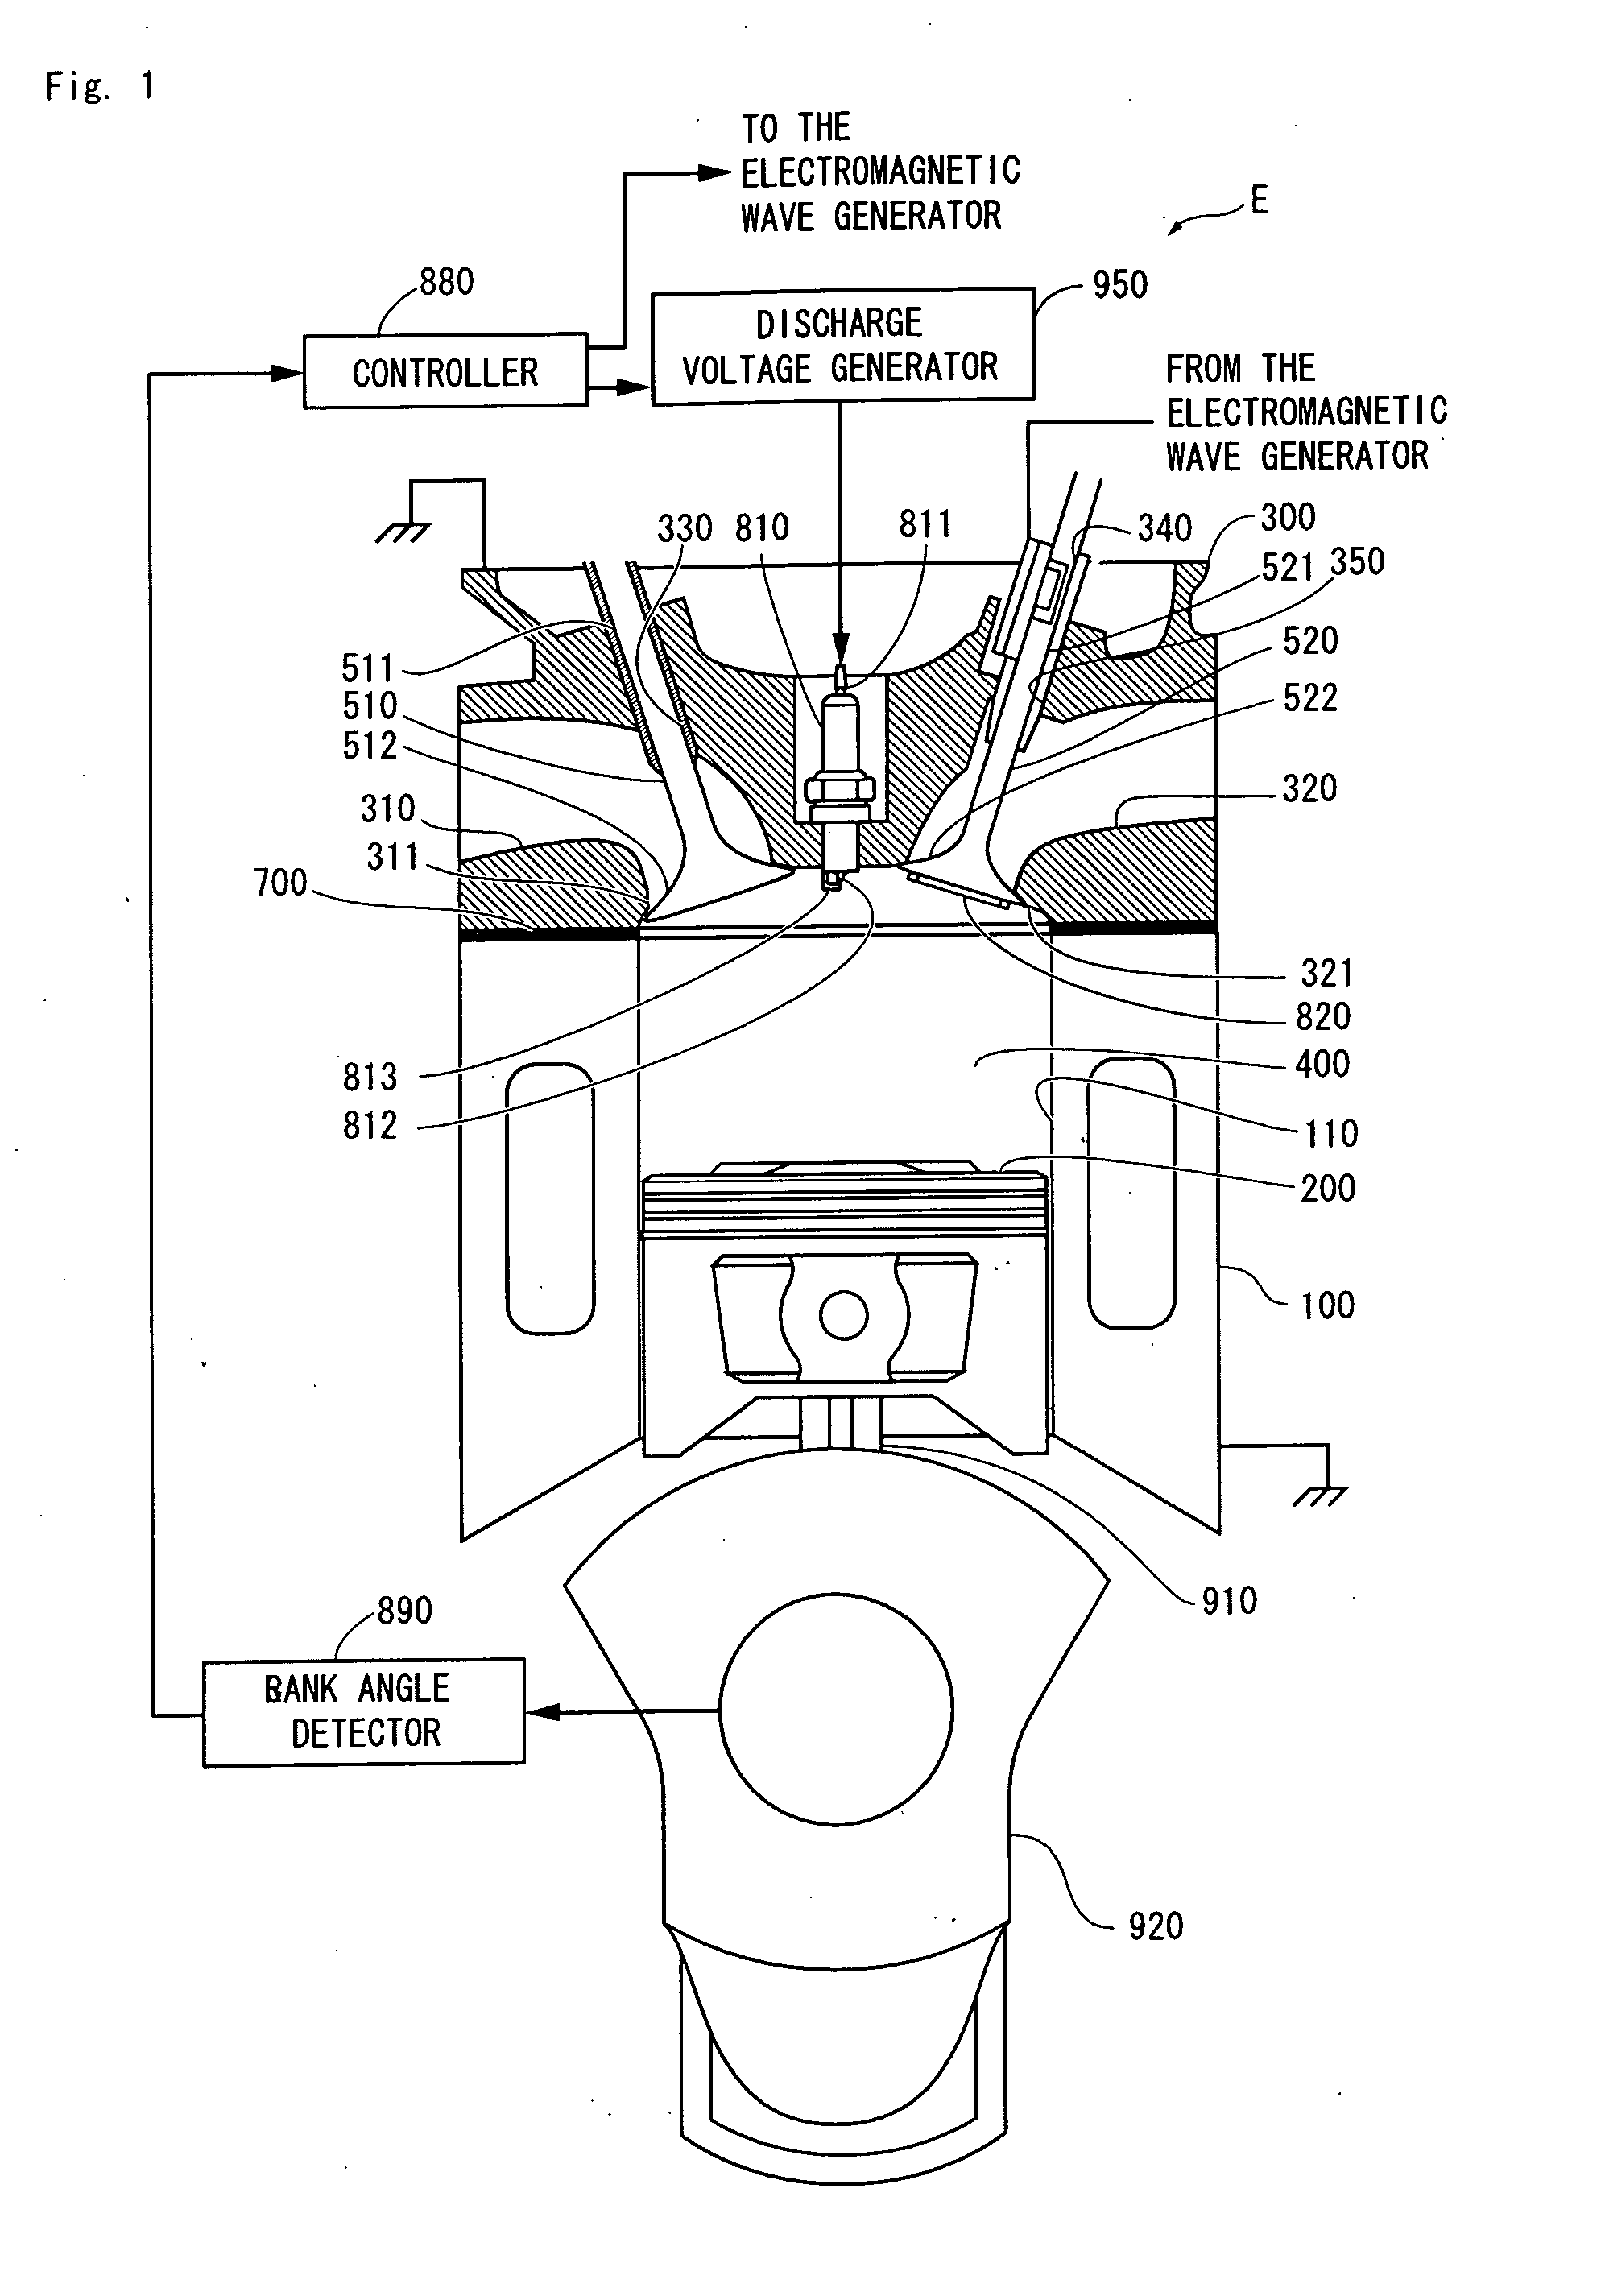 Plasma apparatus using a valve